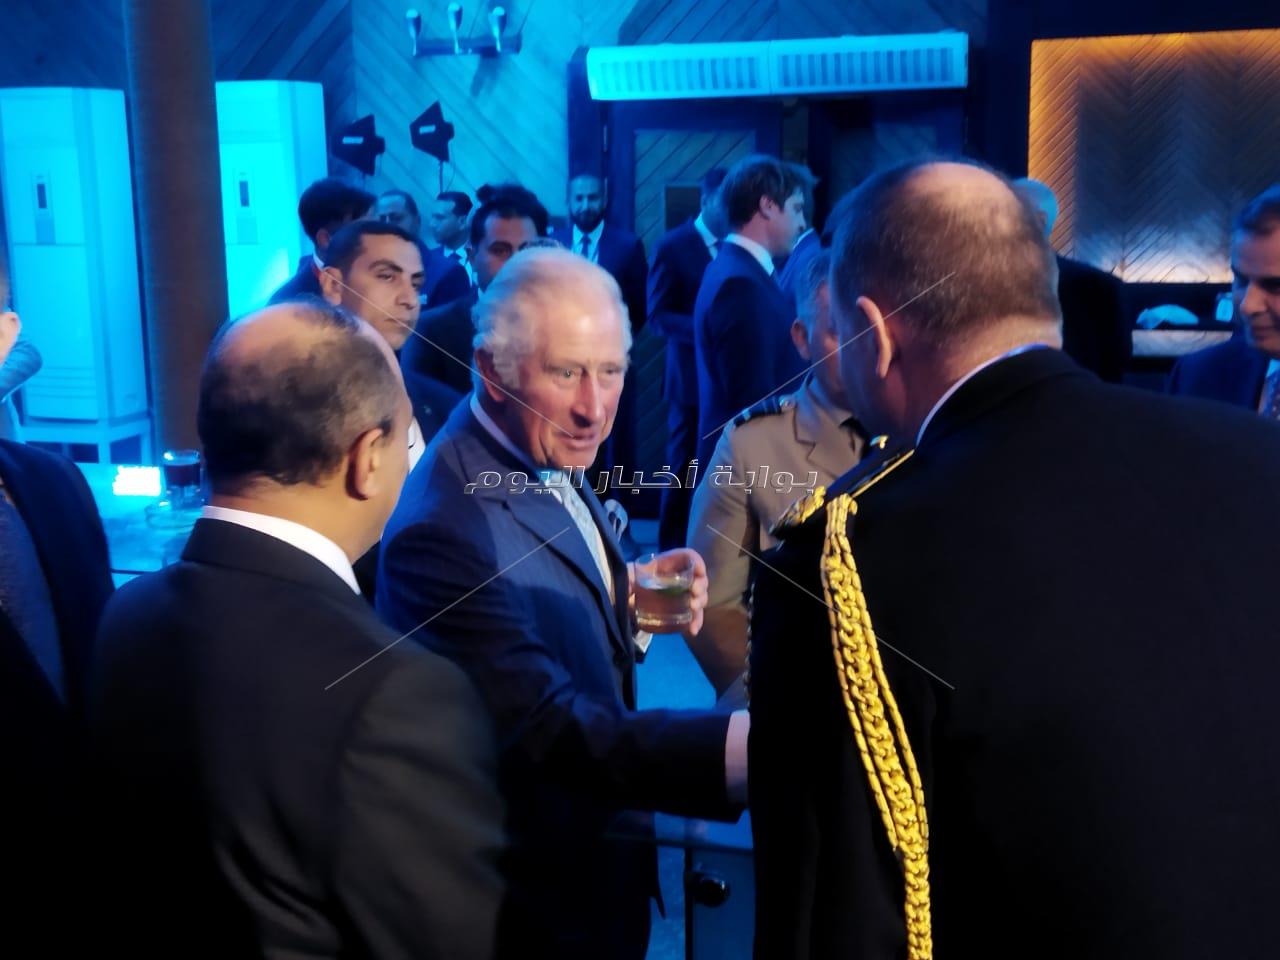 بدء حفل استقبال الأمير تشارلز وزوجته بمنطقة الأهرامات| صور وفيديو